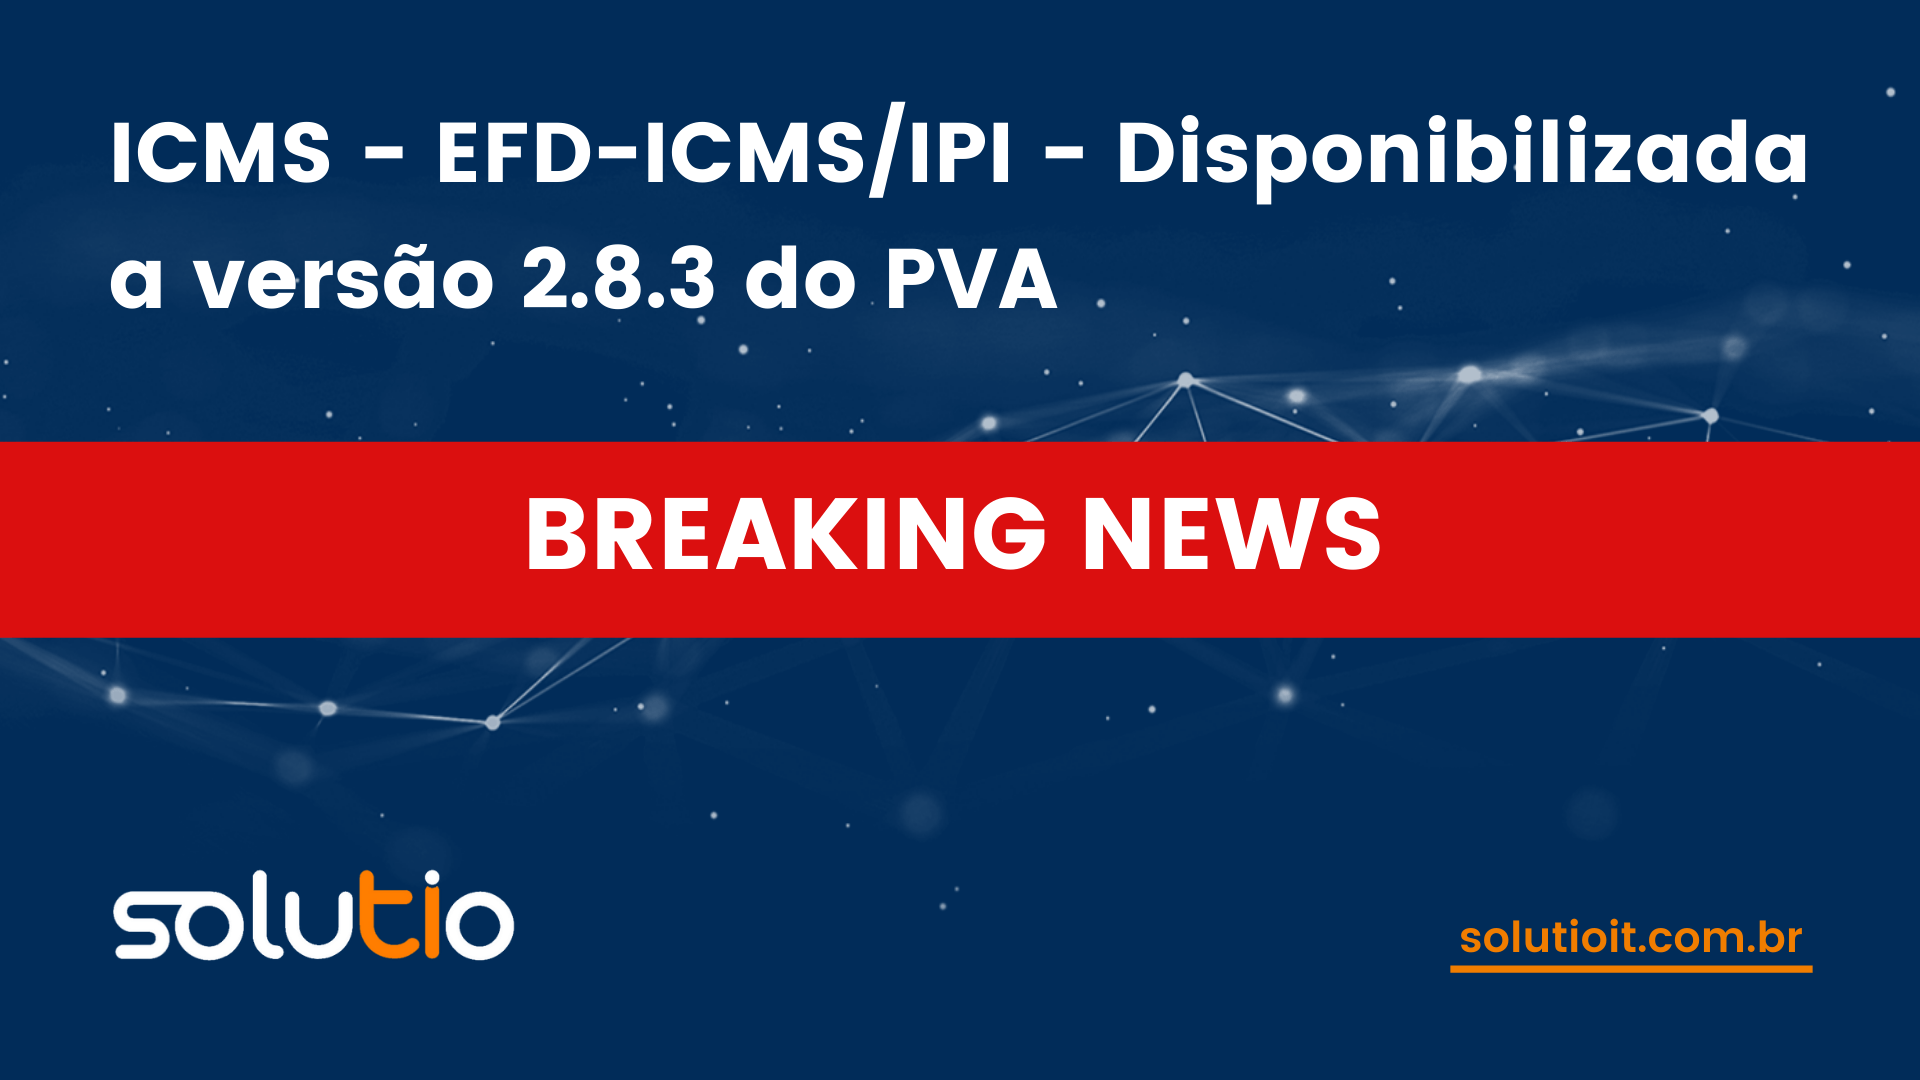 ICMS - EFD-ICMS/IPI - Disponibilizada a versão 2.8.3 do PVA